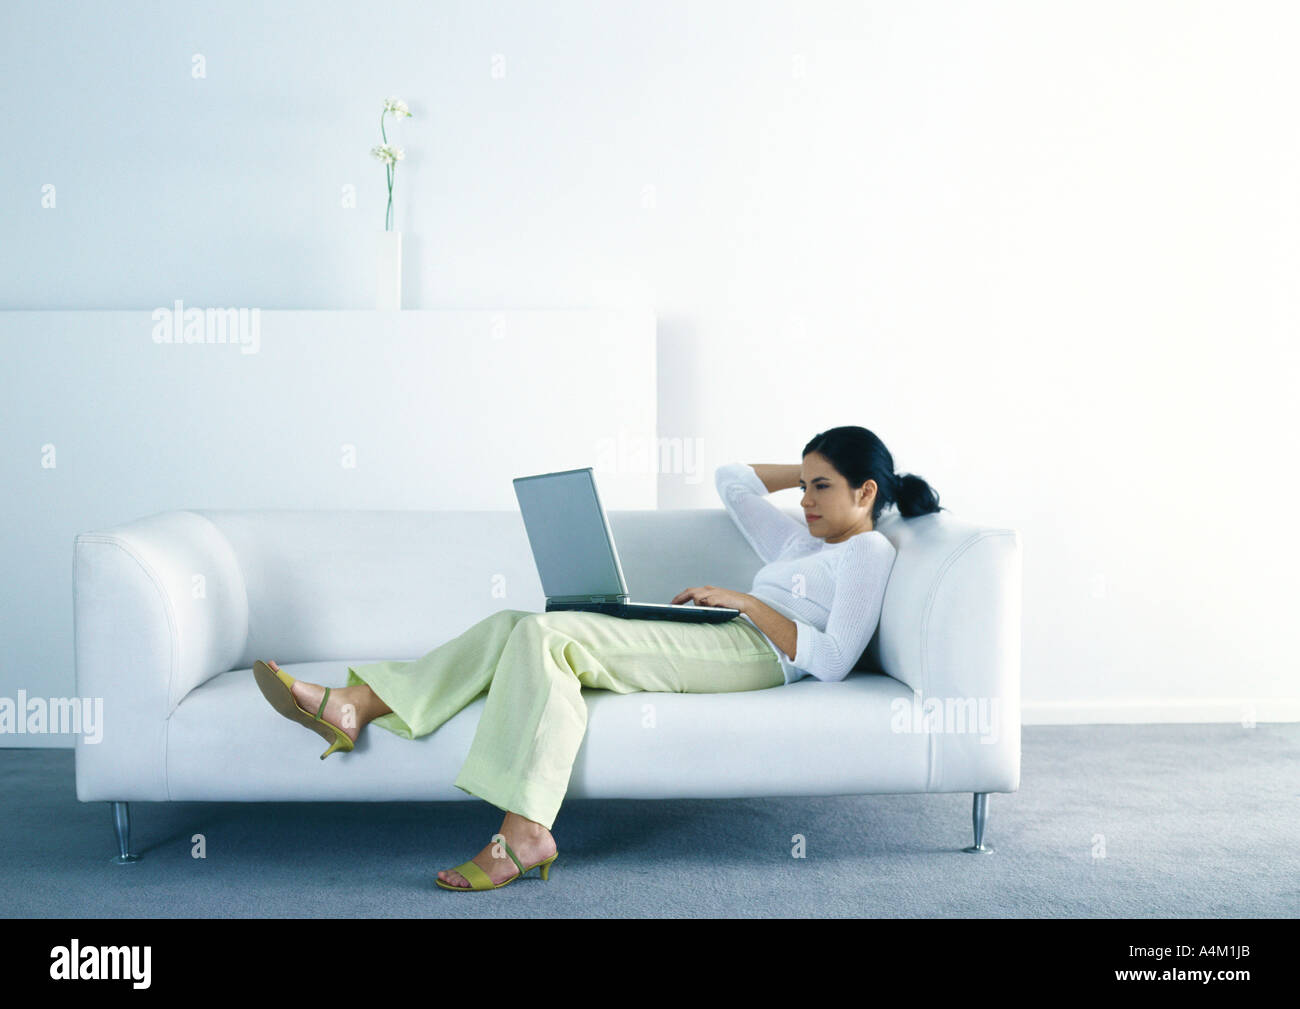 Frau auf Sofa lümmeln und Laptop verwenden Stockfotografie - Alamy